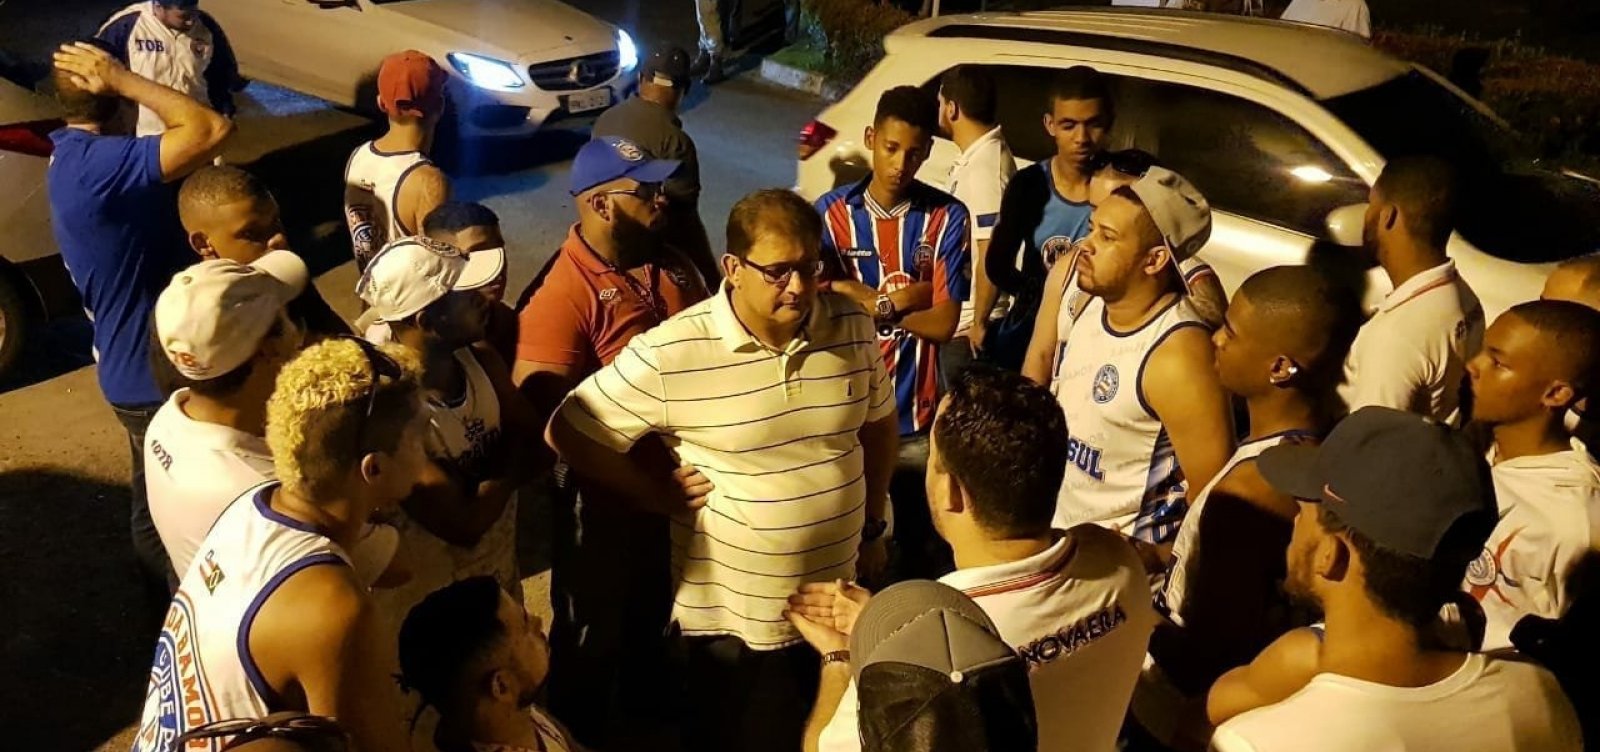 Torcida invade treino e protesta contra má fase do Bahia; clube condena 'constrangimento'